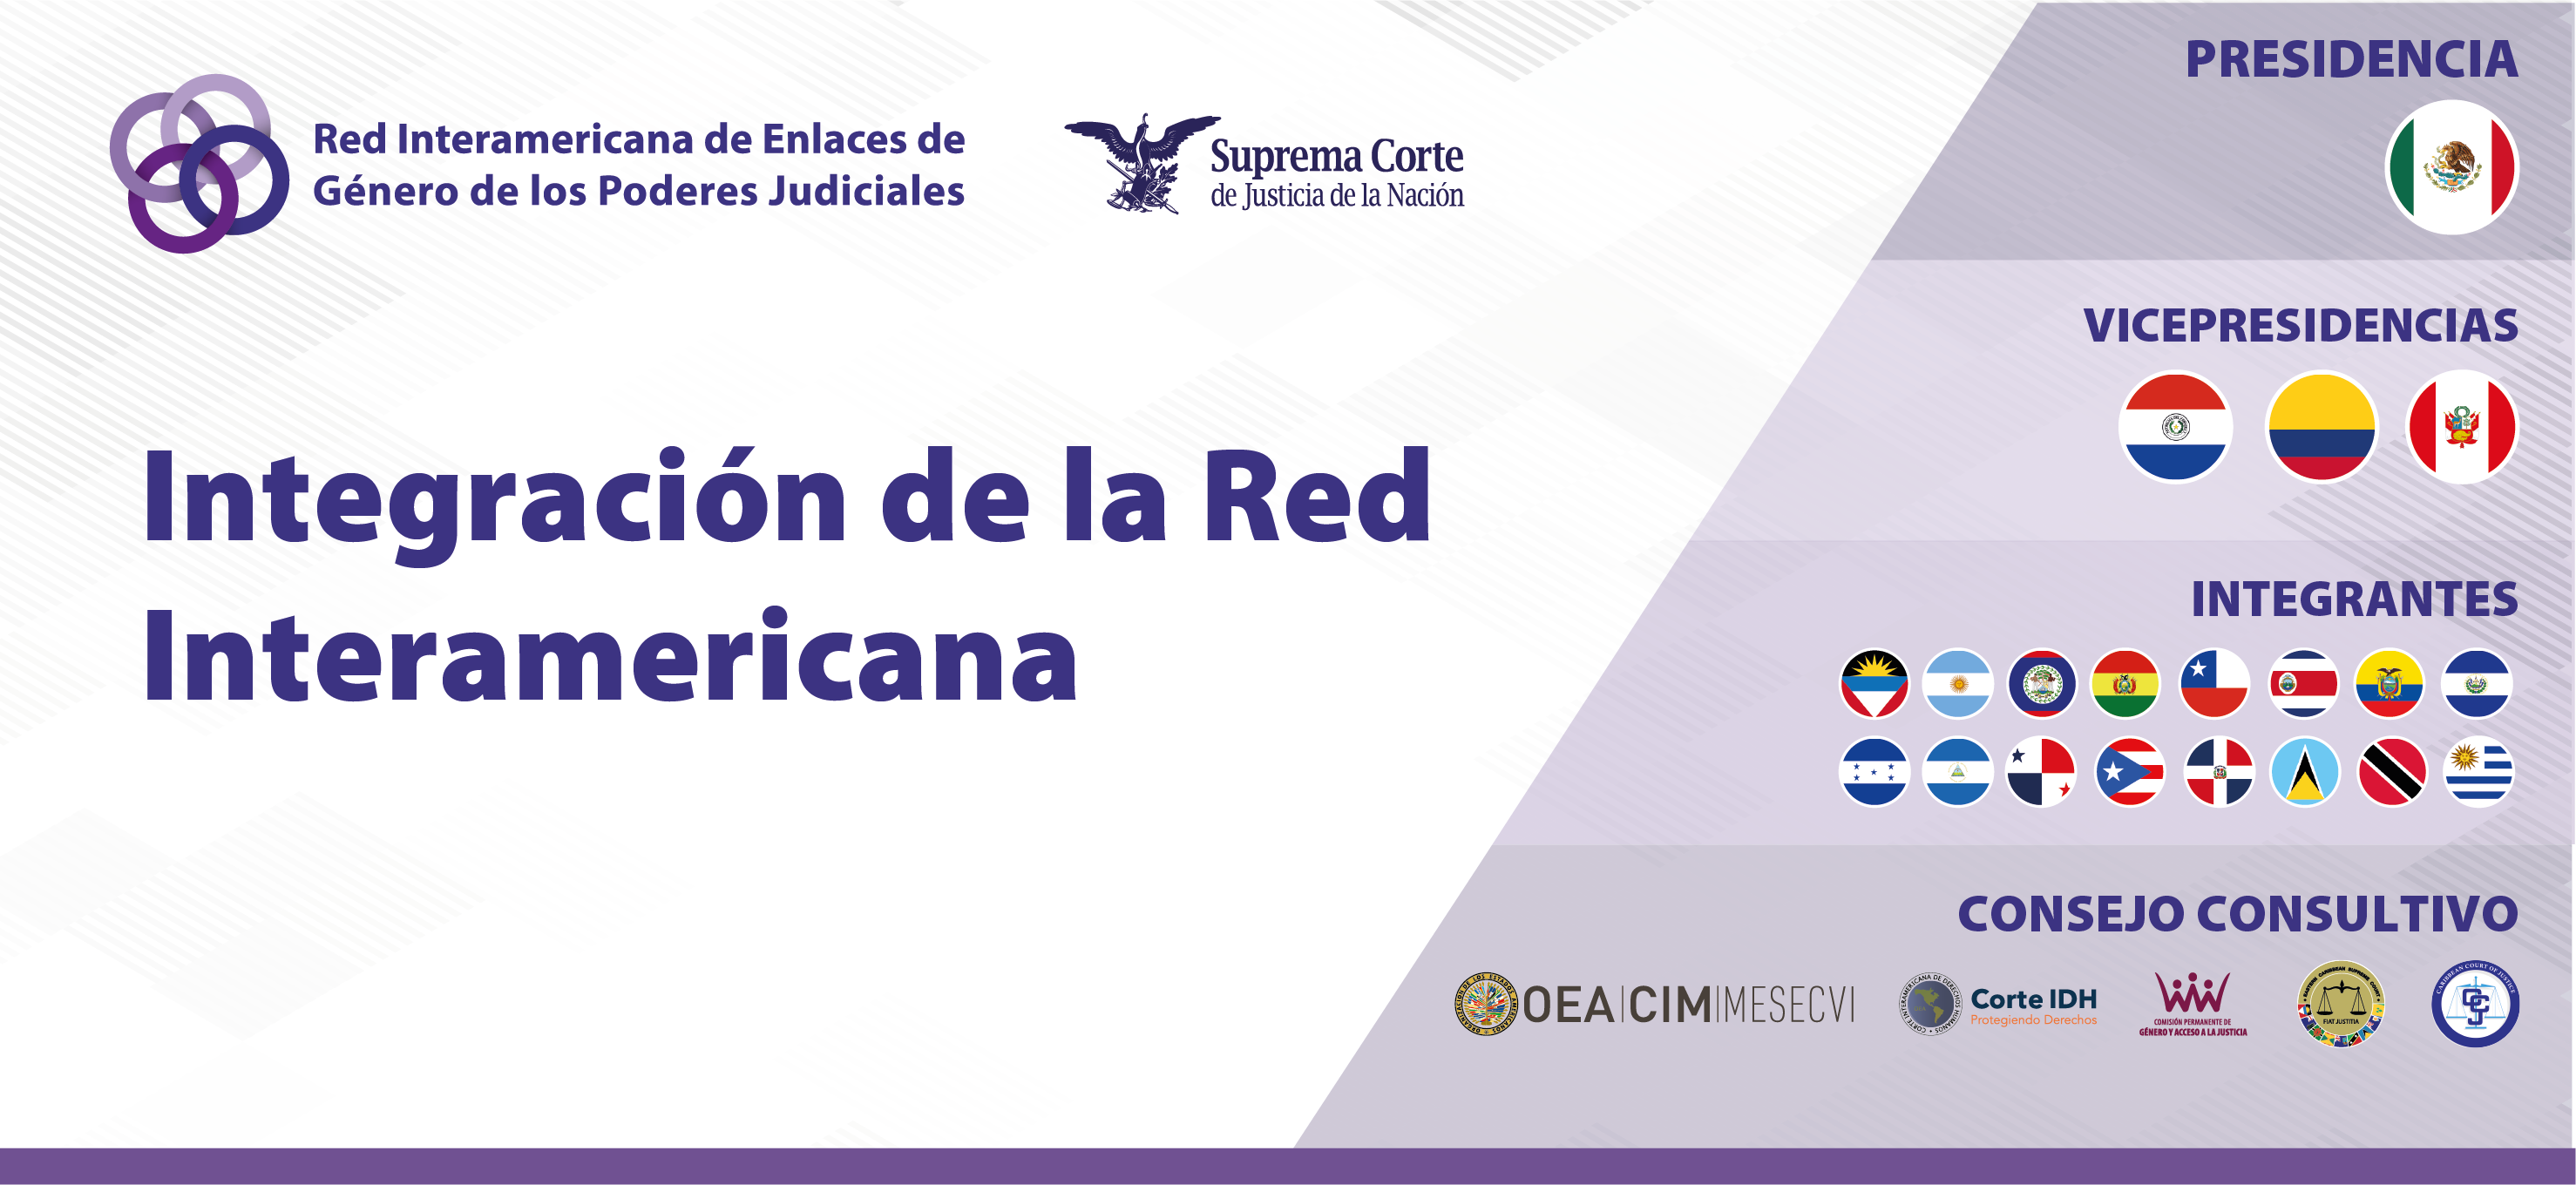 Red Interamericana de Enlaces de Género de los Poderes  Judiciales